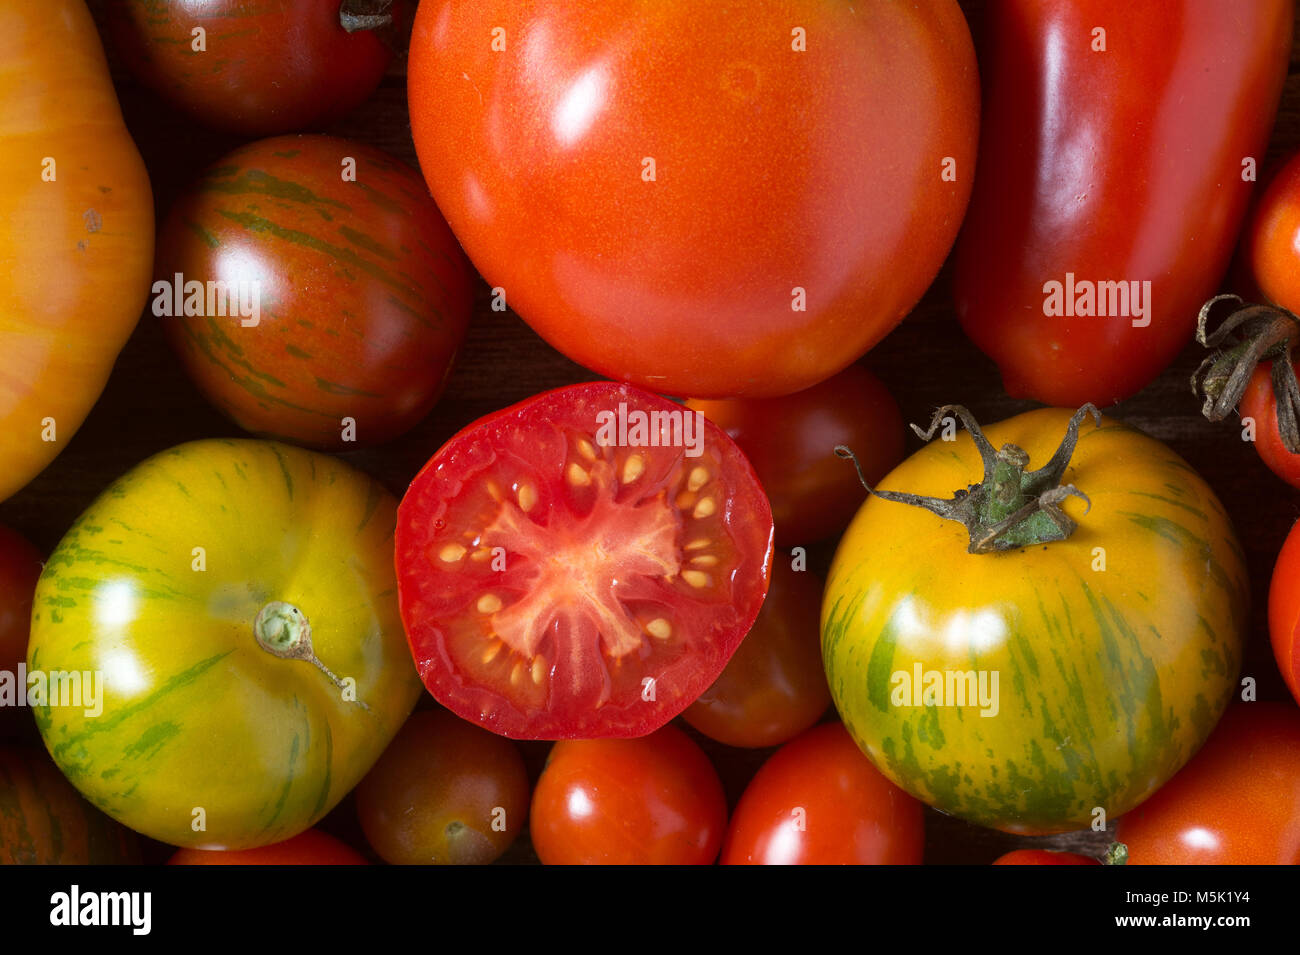 En plongée des tomates colorées Banque D'Images